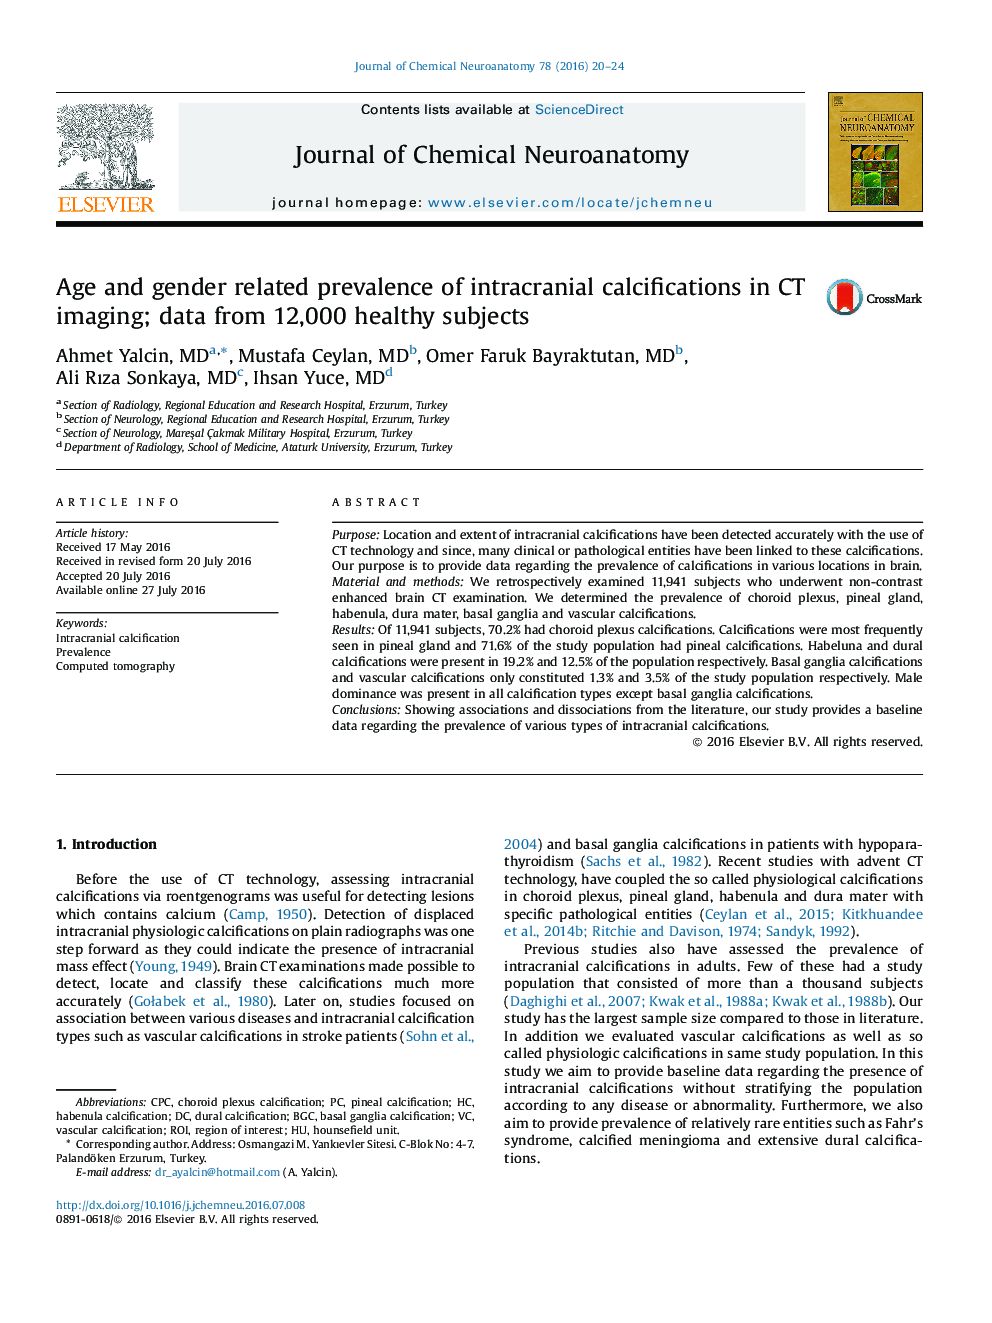 سن و شیوع مربوط به جنسیت از کلسیفیکاسیون داخل جمجمه در تصویربرداری CT؛ داده ها از 12000 نفر از افراد سالم